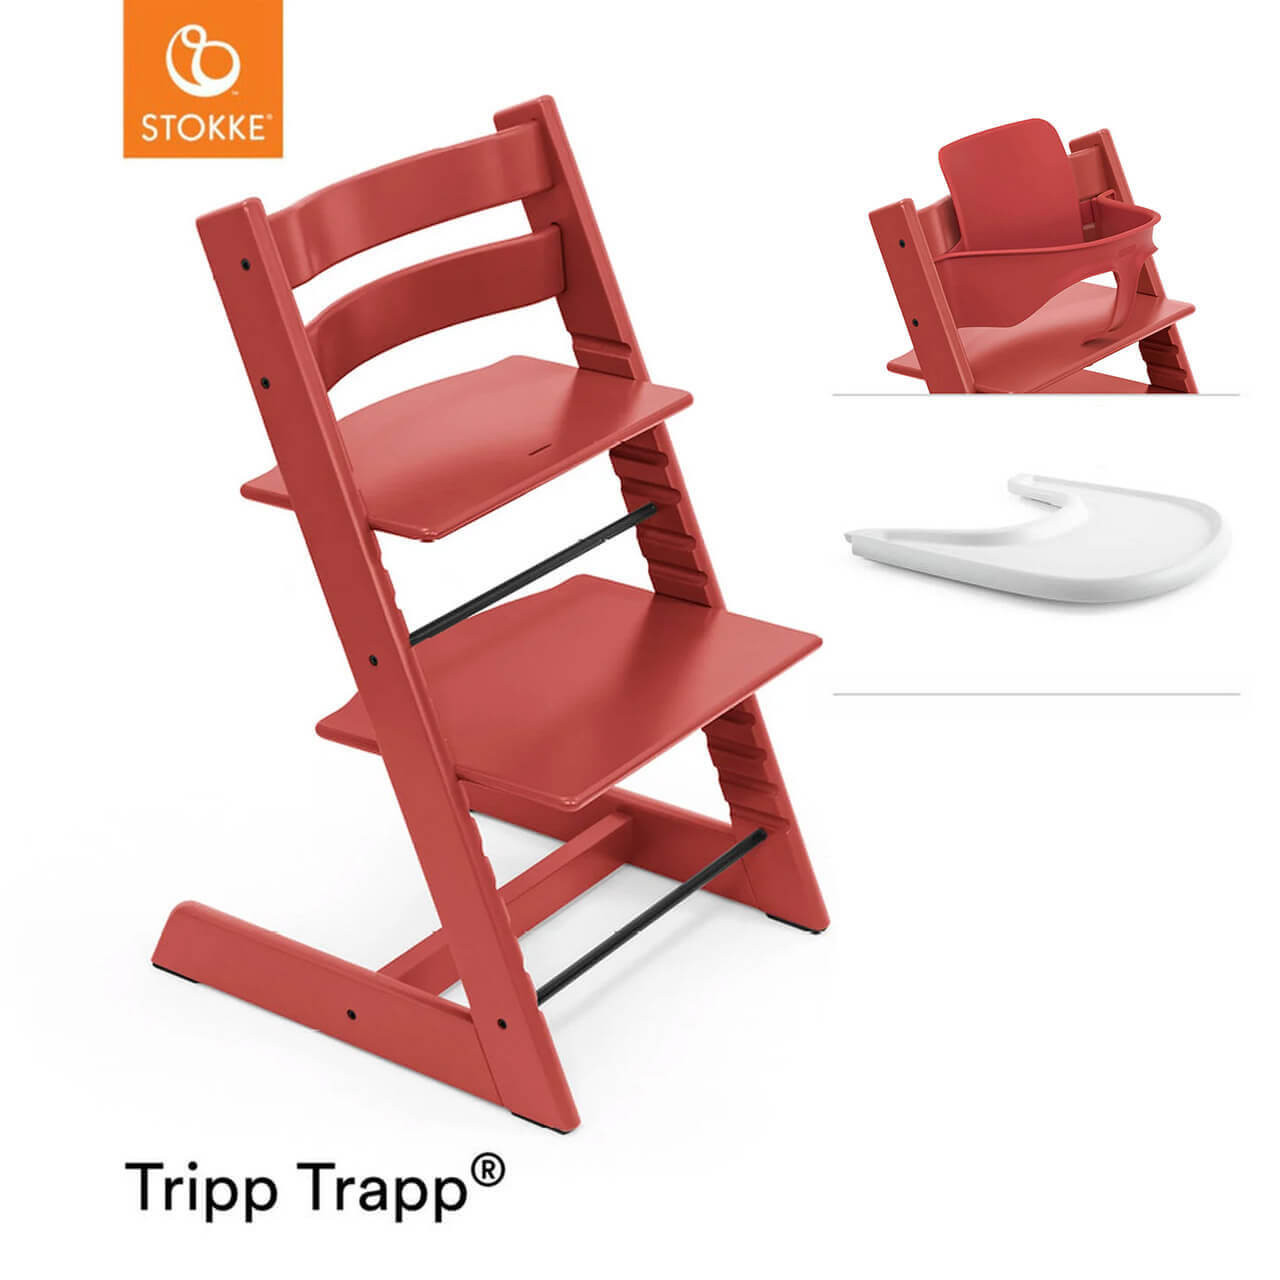 Tripp Trapp Baby Set Warm Red